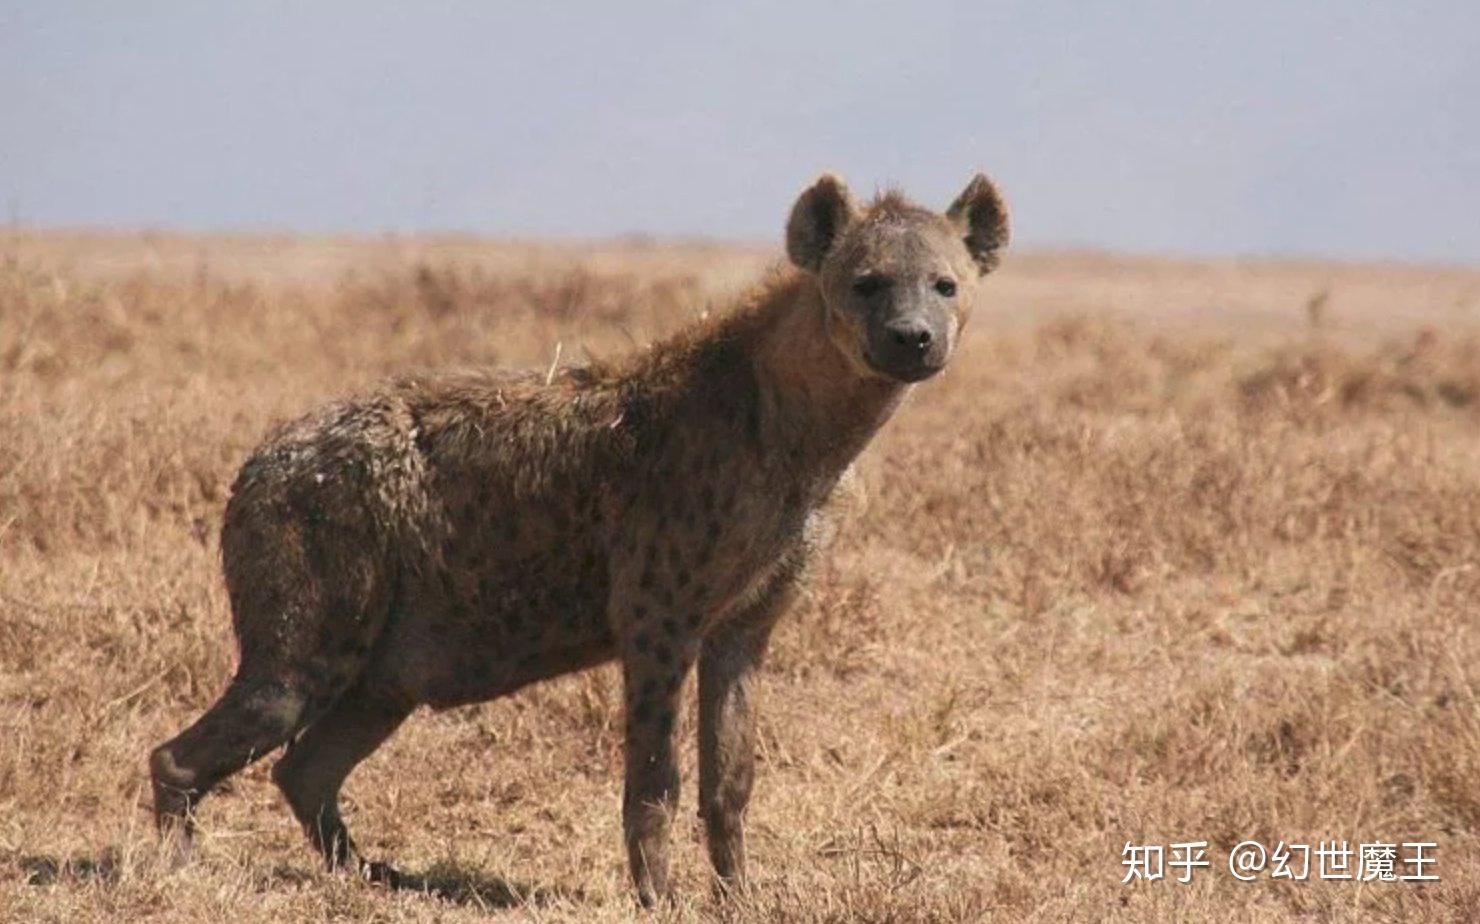 非洲鬣狗的咬合力,大到可以直接将骨头咬碎,从而吸食骨髓,哪怕狮子